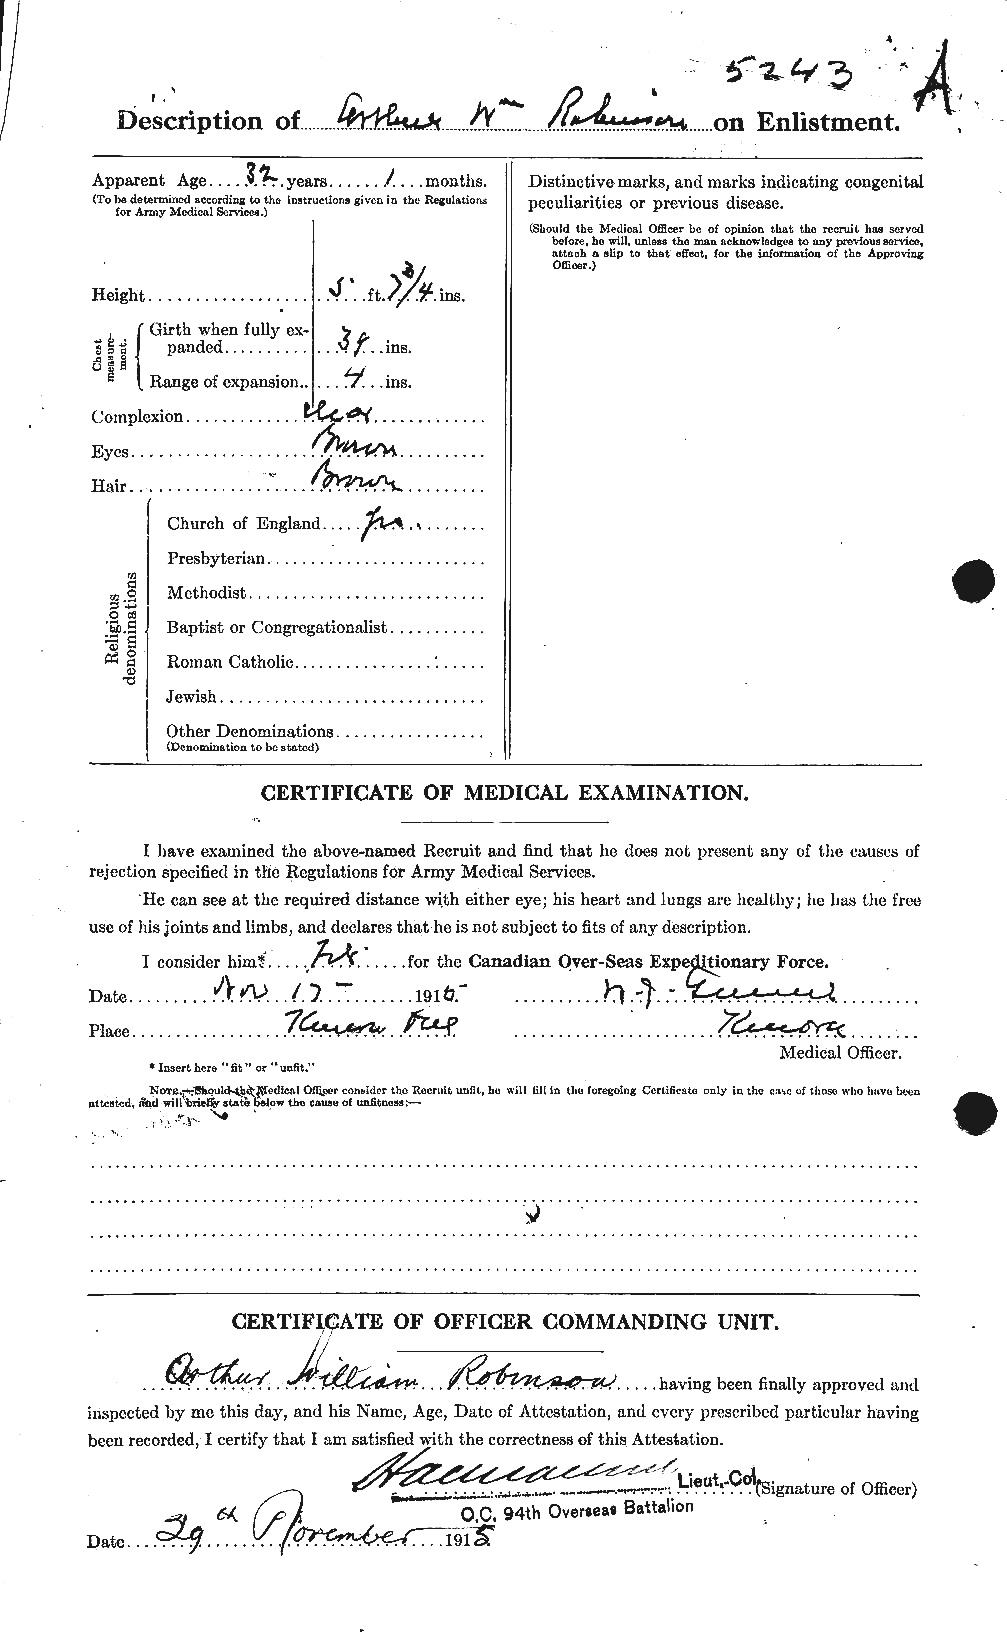 Dossiers du Personnel de la Première Guerre mondiale - CEC 607010b